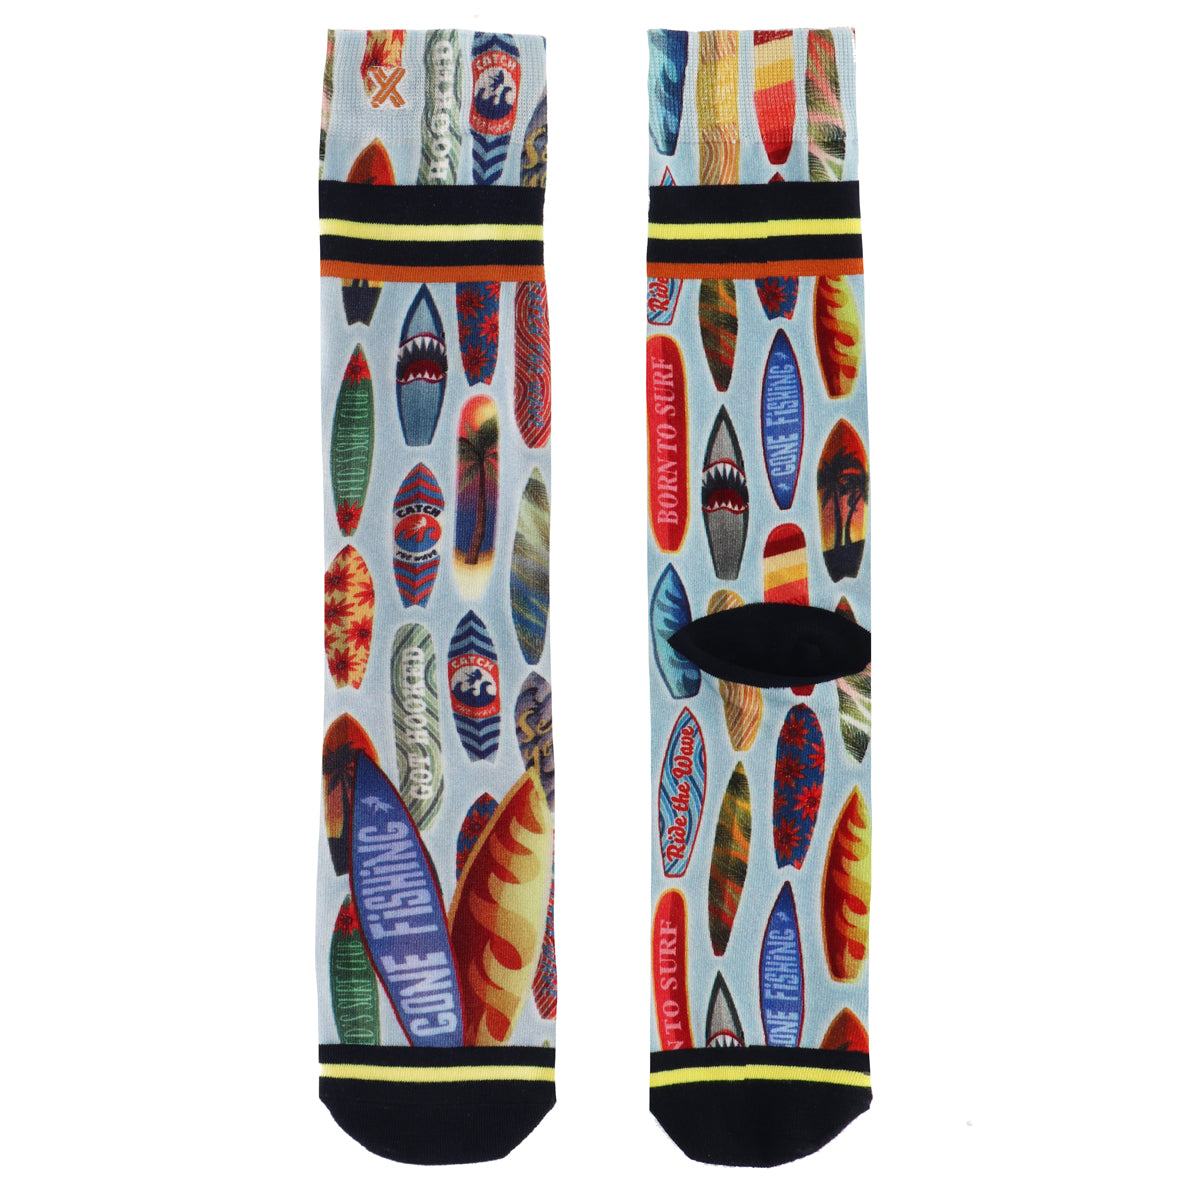 Xpooos & ADNF Surfboards Bamboo men's socks